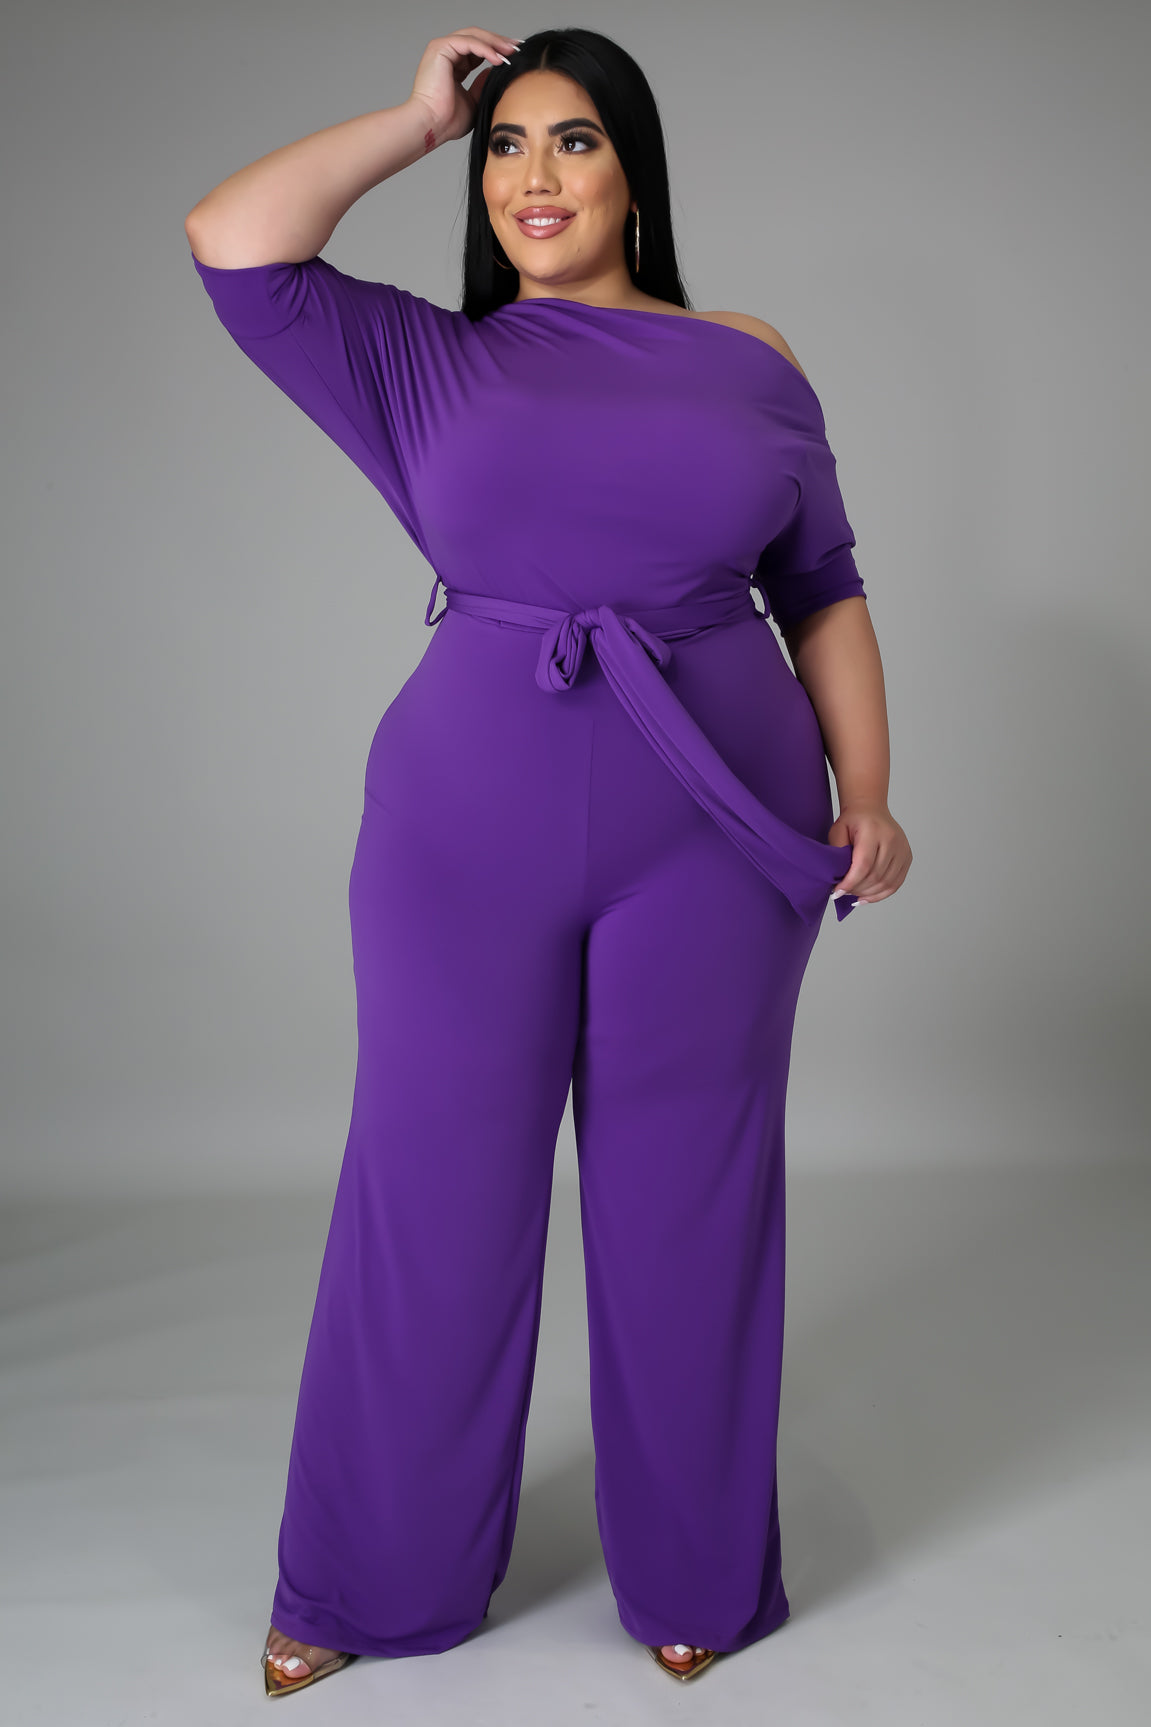 The color purple jumpsuit